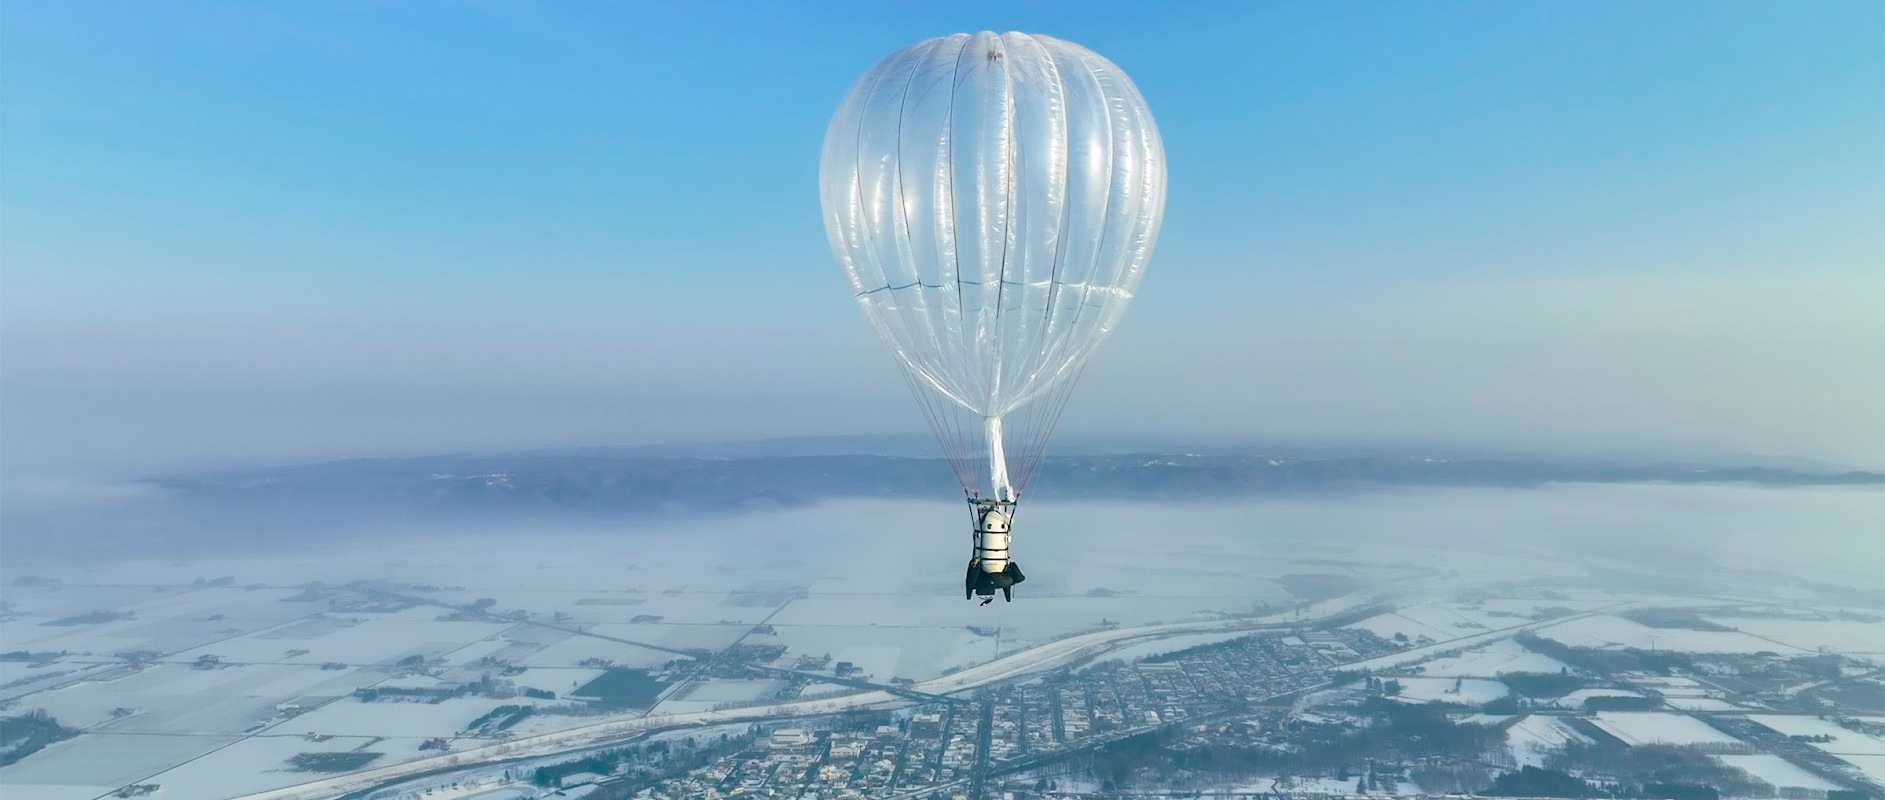 岩谷技研、気球による“宇宙遊覧”を実現するプロジェクト始動─2023年度内に商業化、気球で成層圏へ